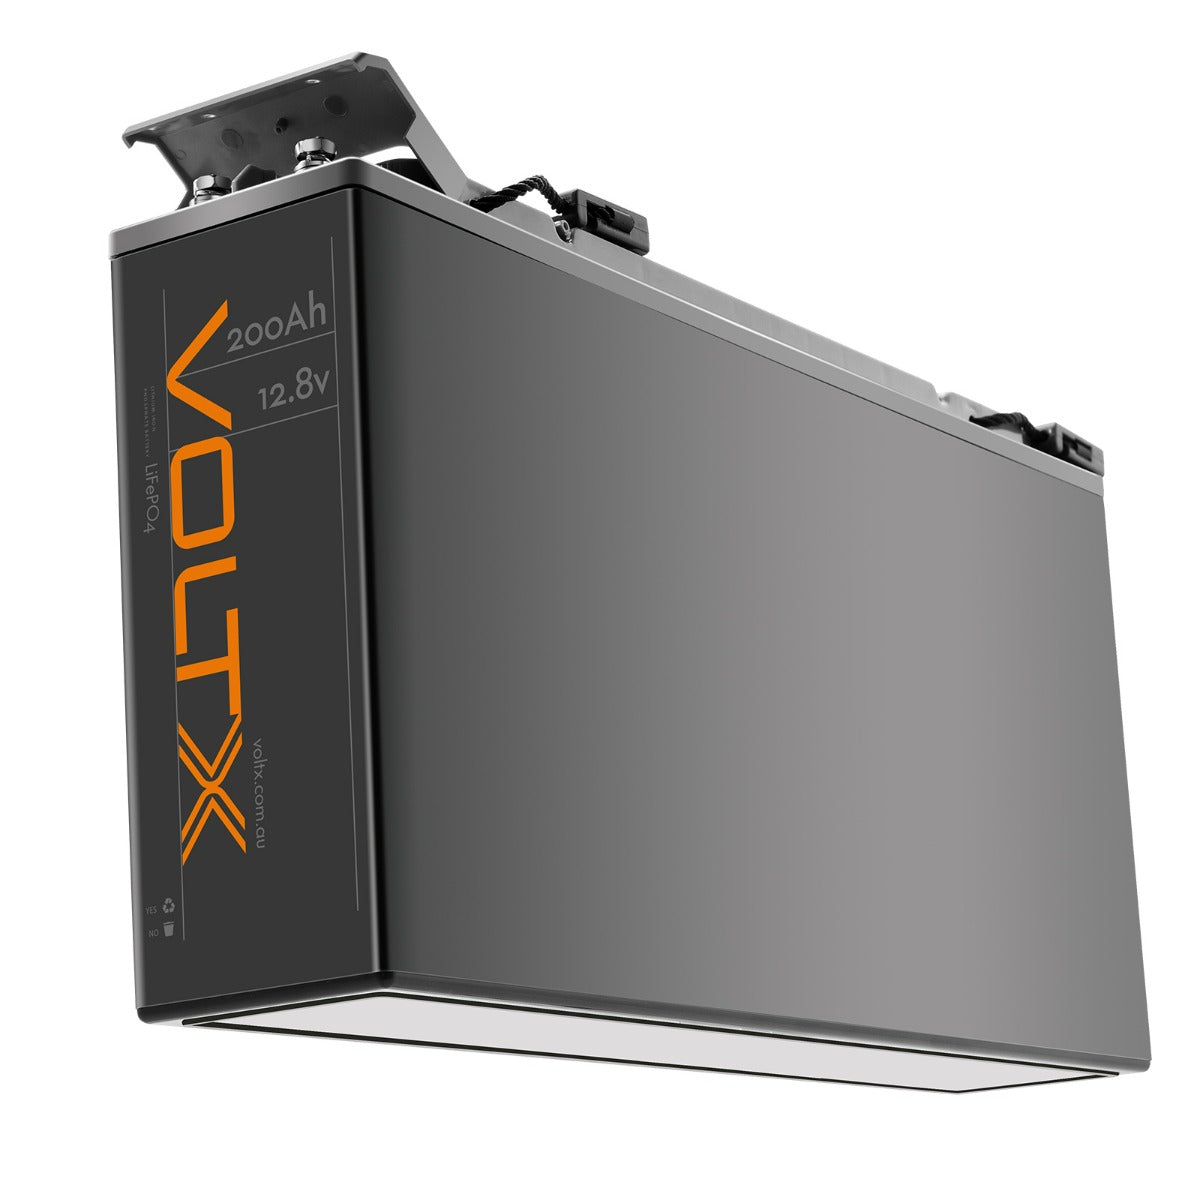 VoltX 12V 200Ah Slim LiFePO4 Battery